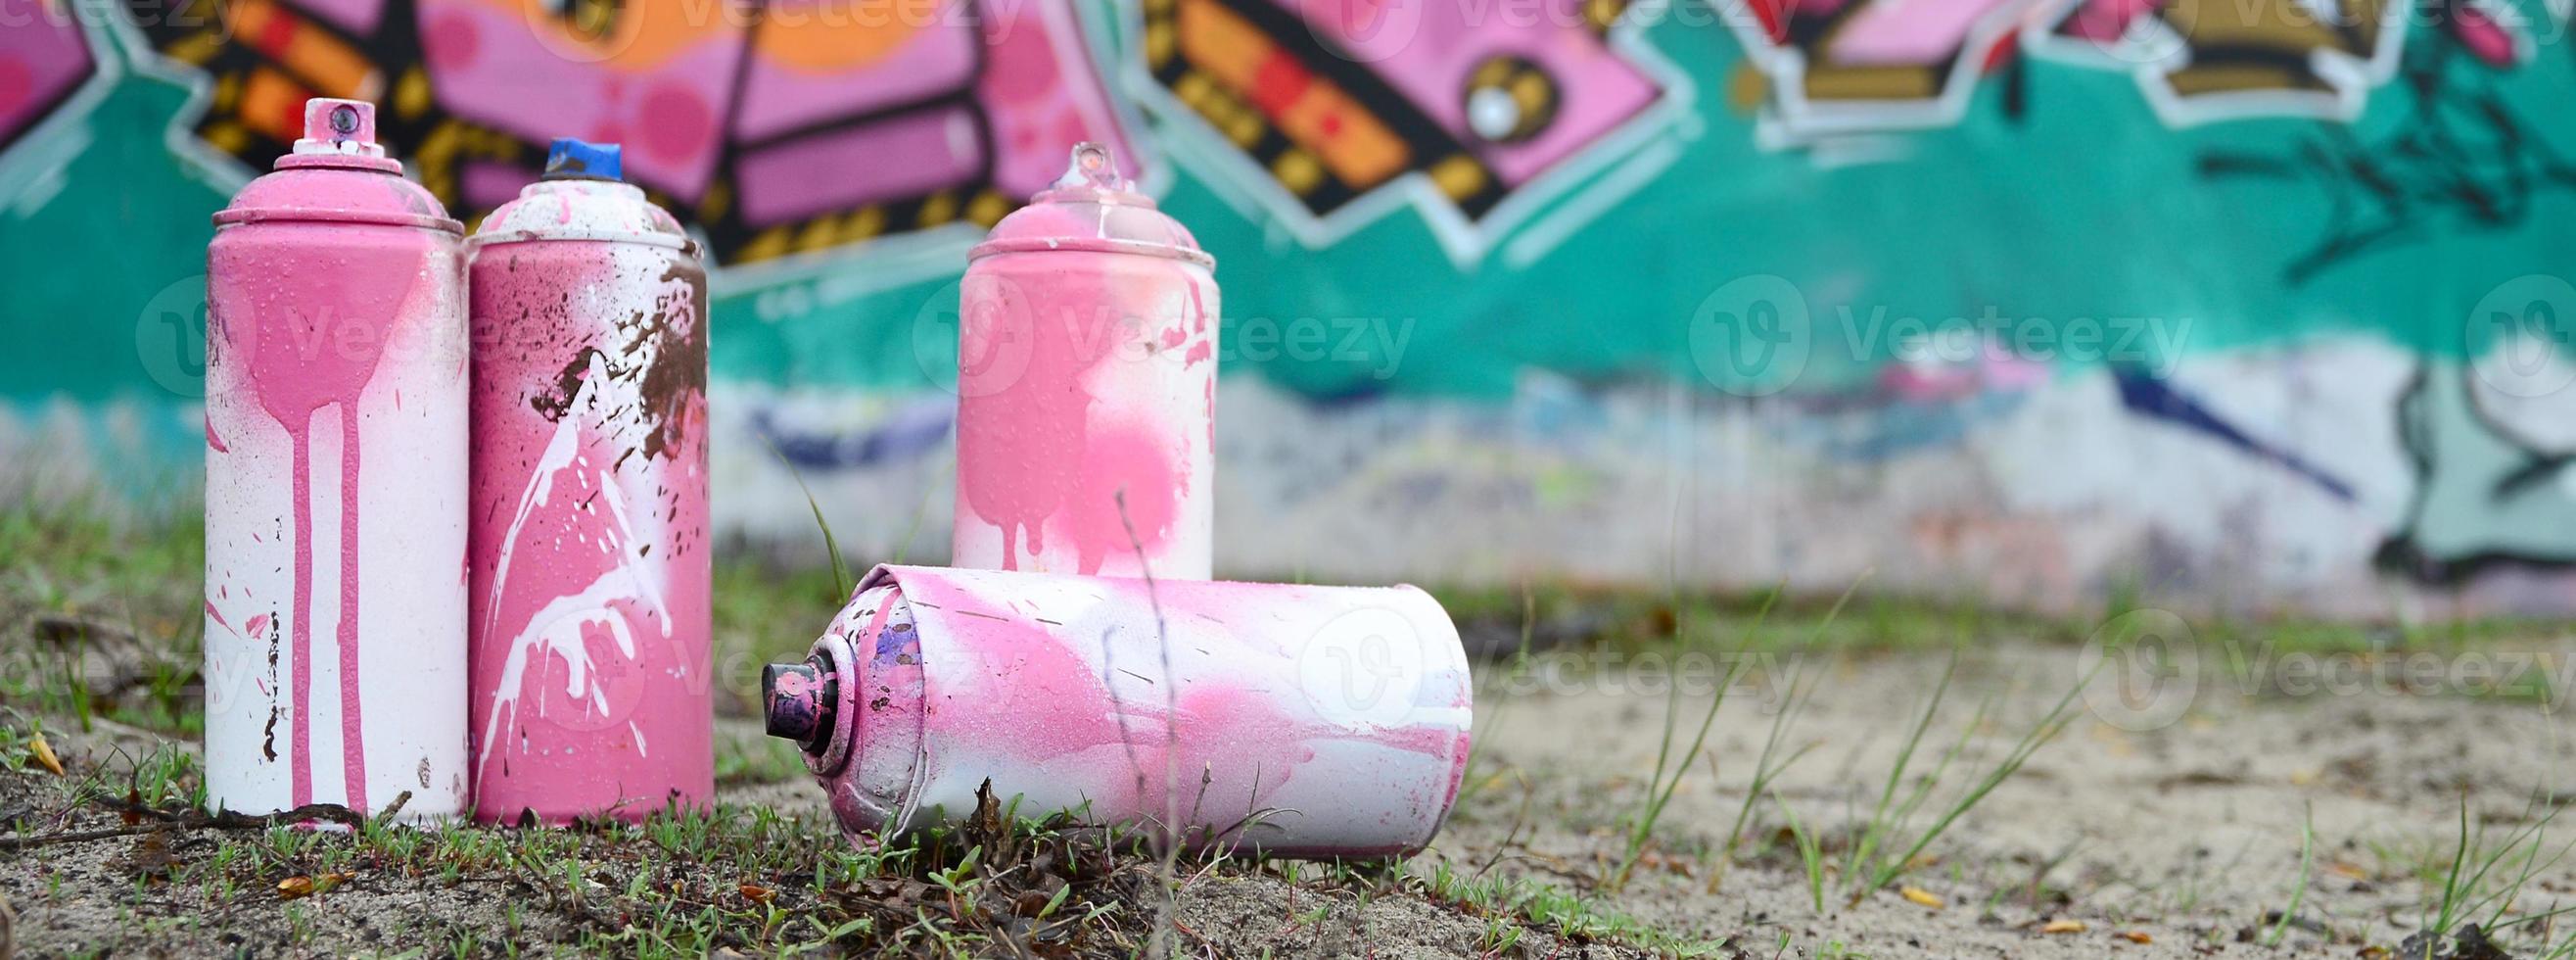 Ein paar gebrauchte Farbdosen liegen auf dem Boden in der Nähe der Wand mit einem schönen Graffiti-Gemälde in rosa und grünen Farben. Street-Art-Konzept foto